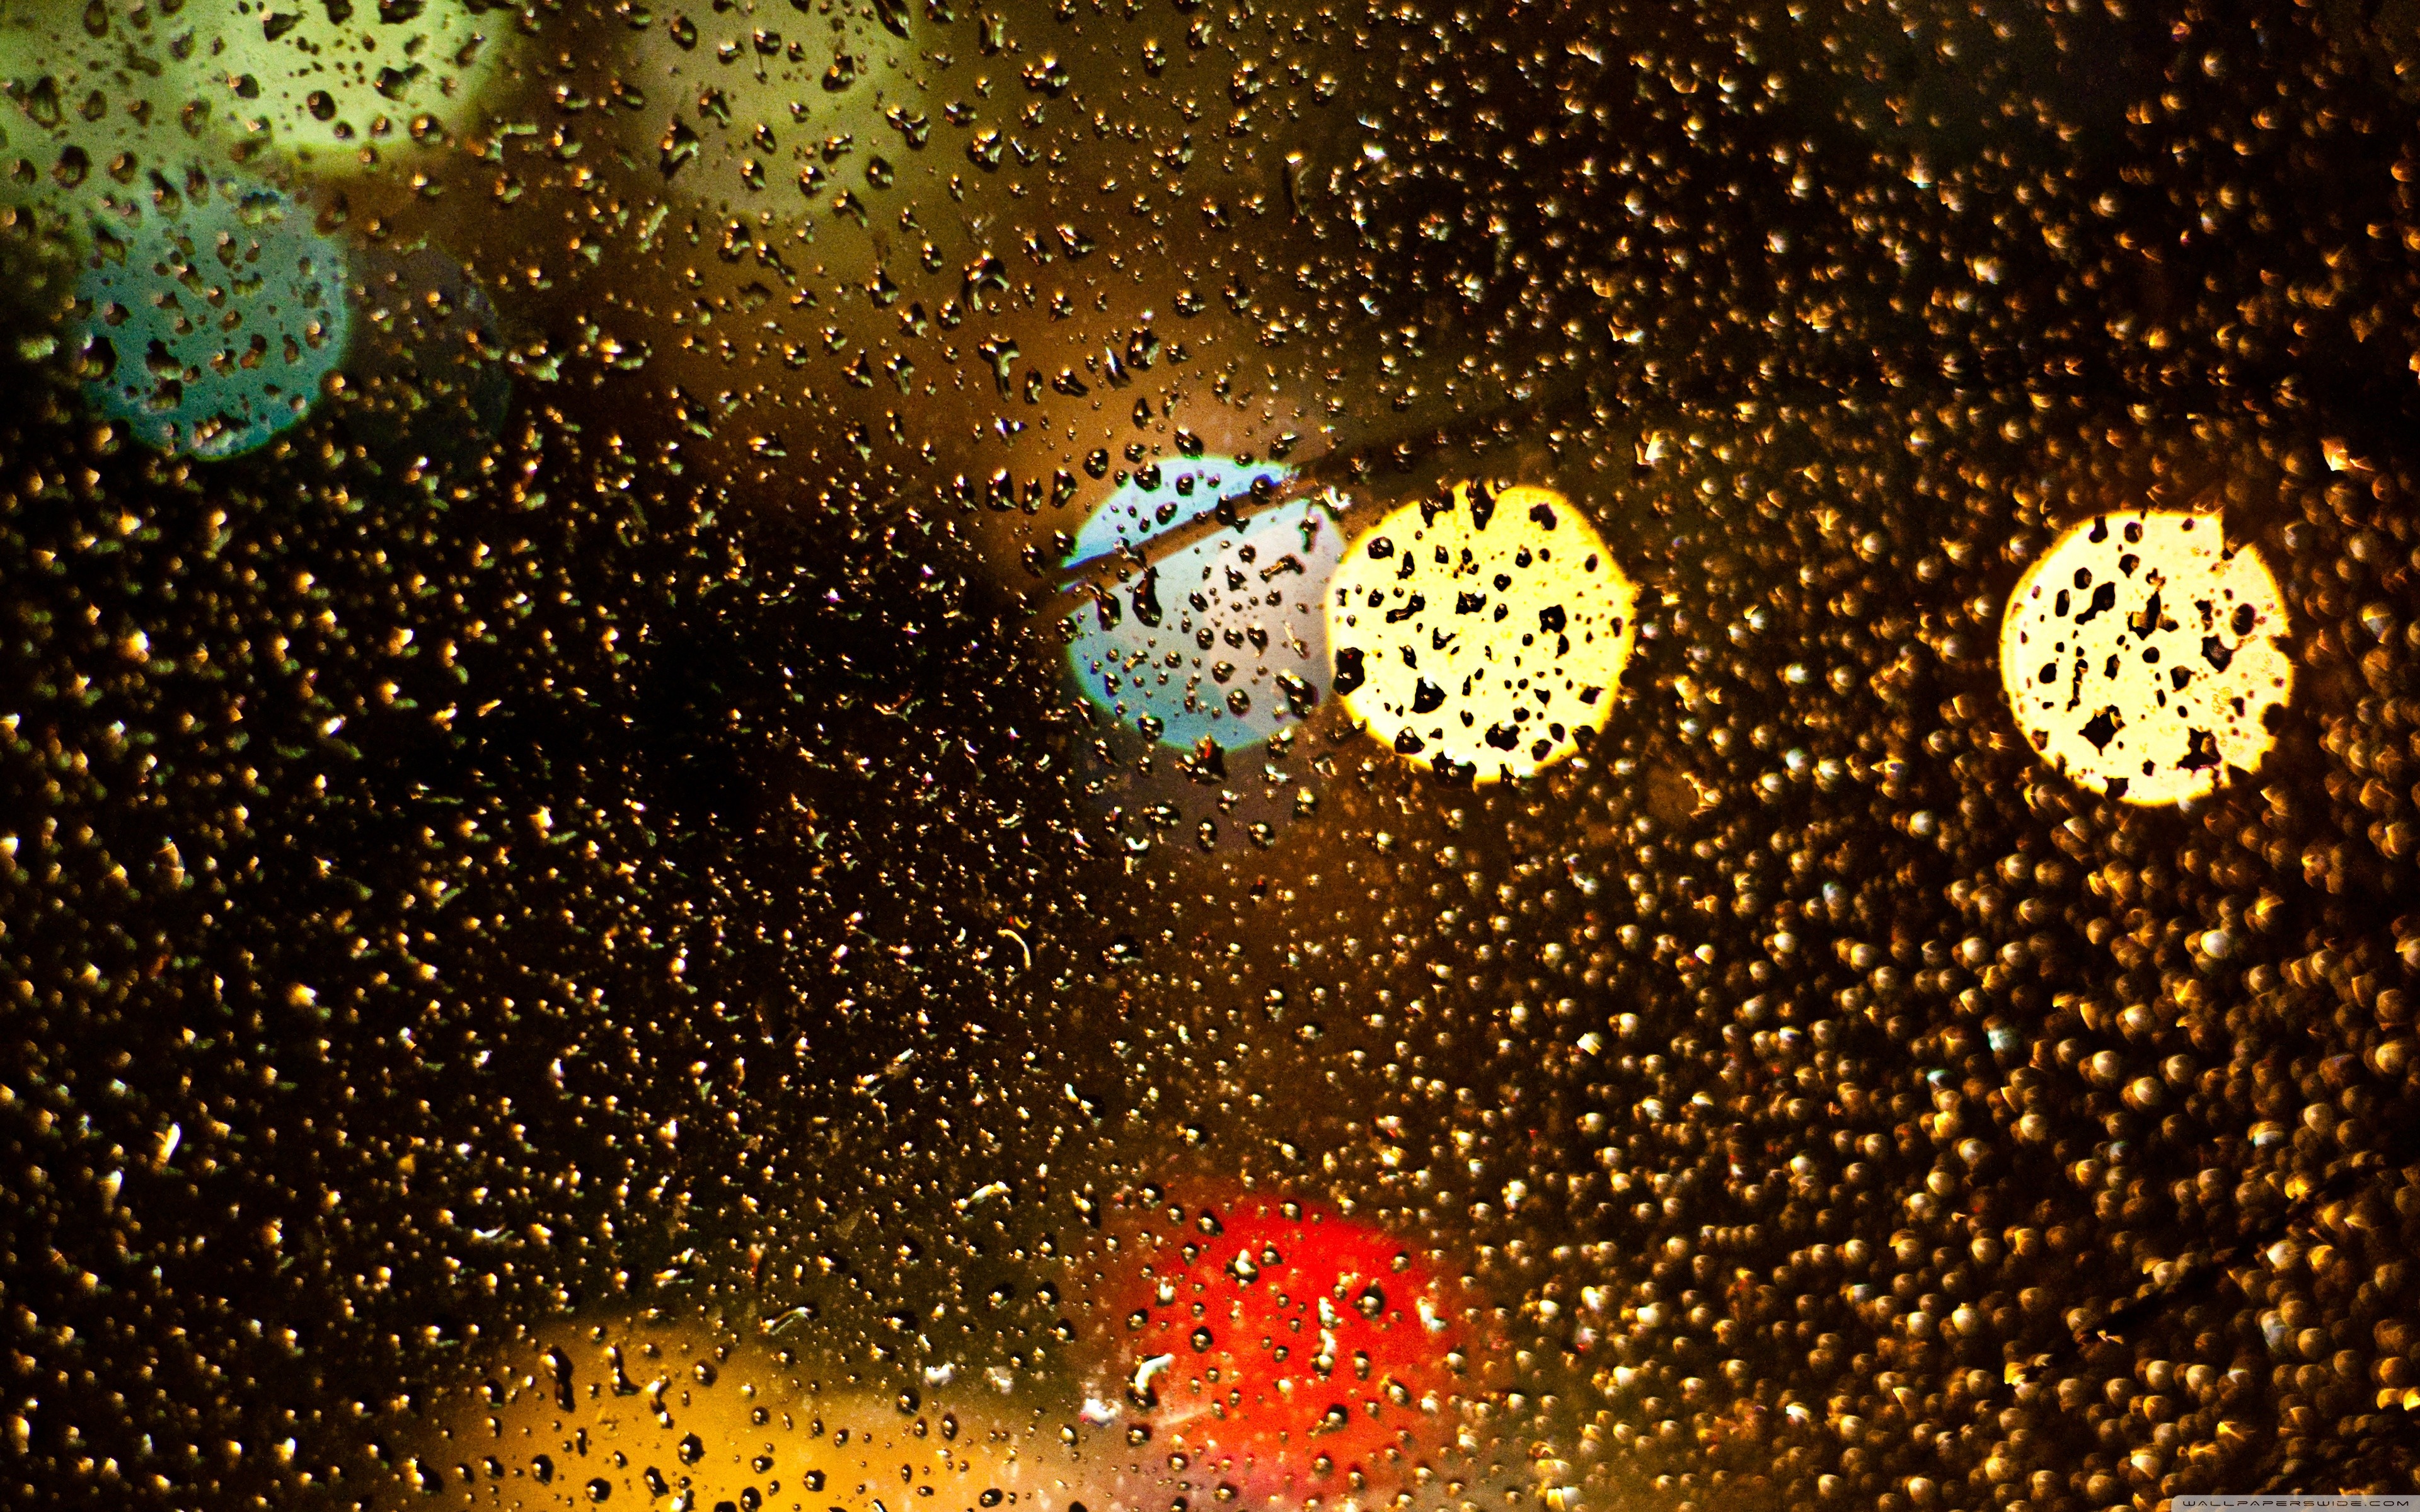 lights, blur, water drops - desktop wallpaper